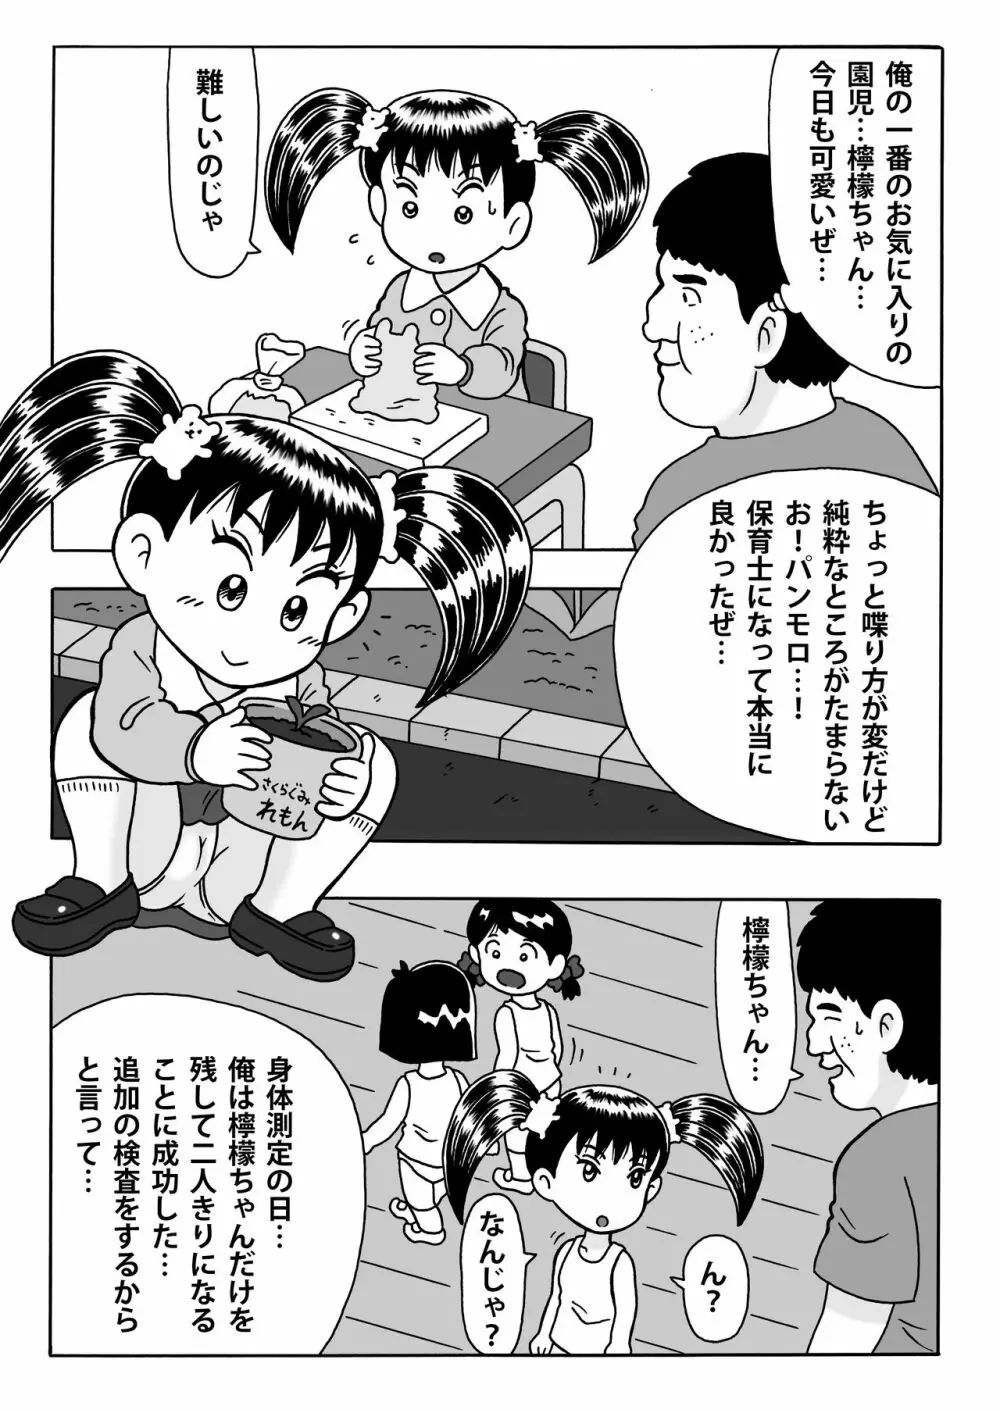 檸檬ちゃんとロリコン保育士 - page1